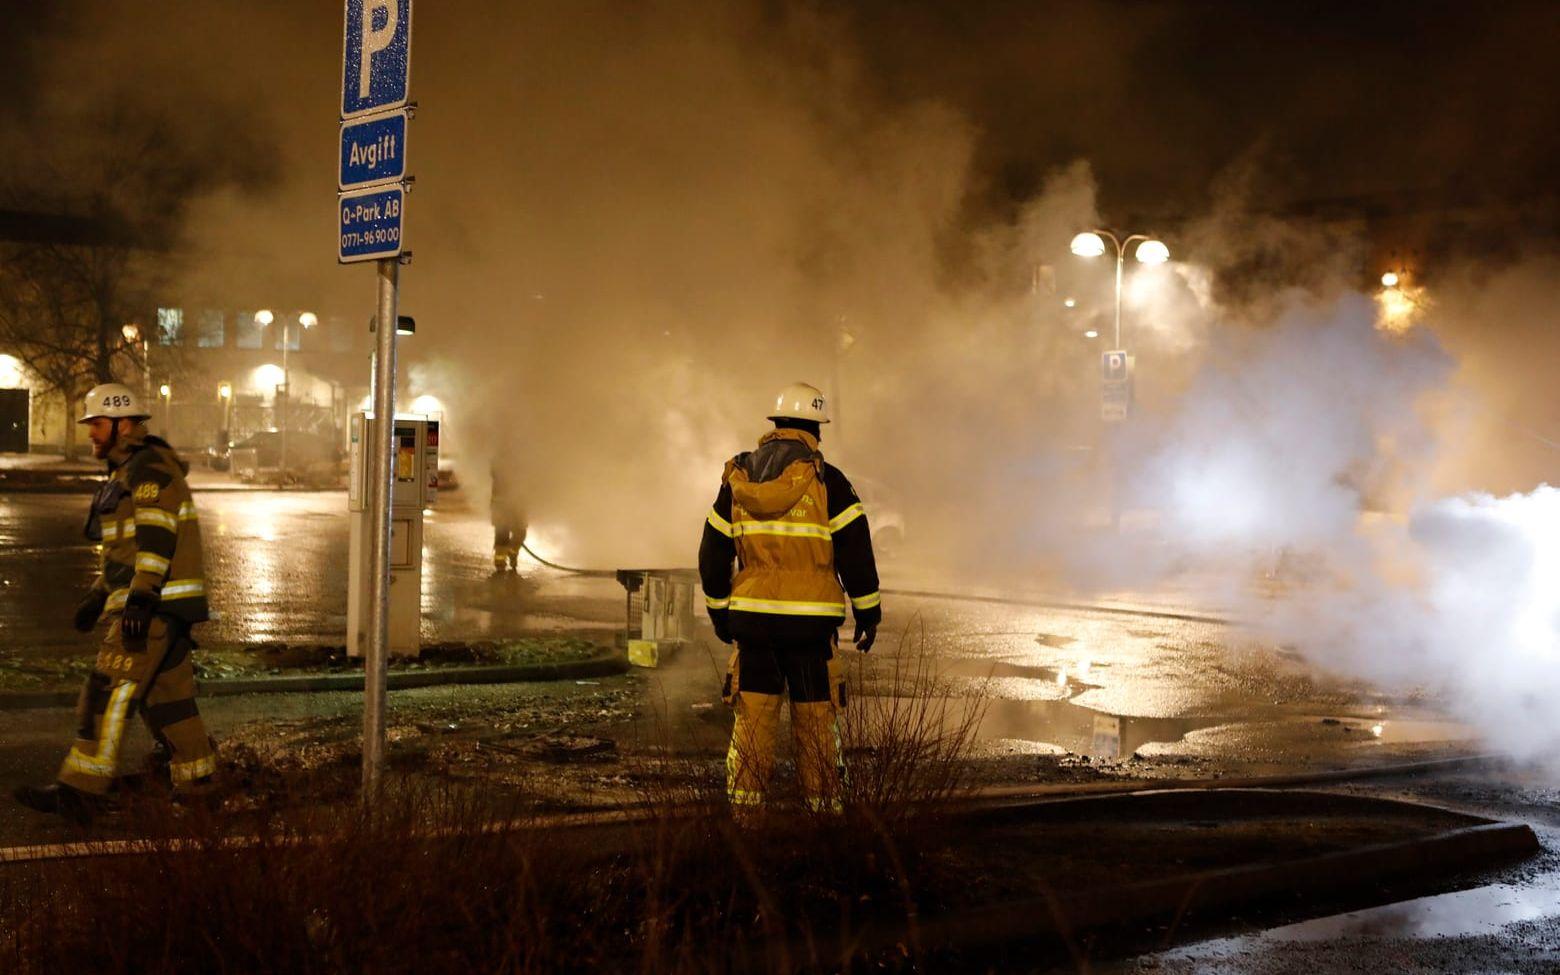 Totalt ska nio brandbilar vara på plats i Rinkeby. Bild: TT